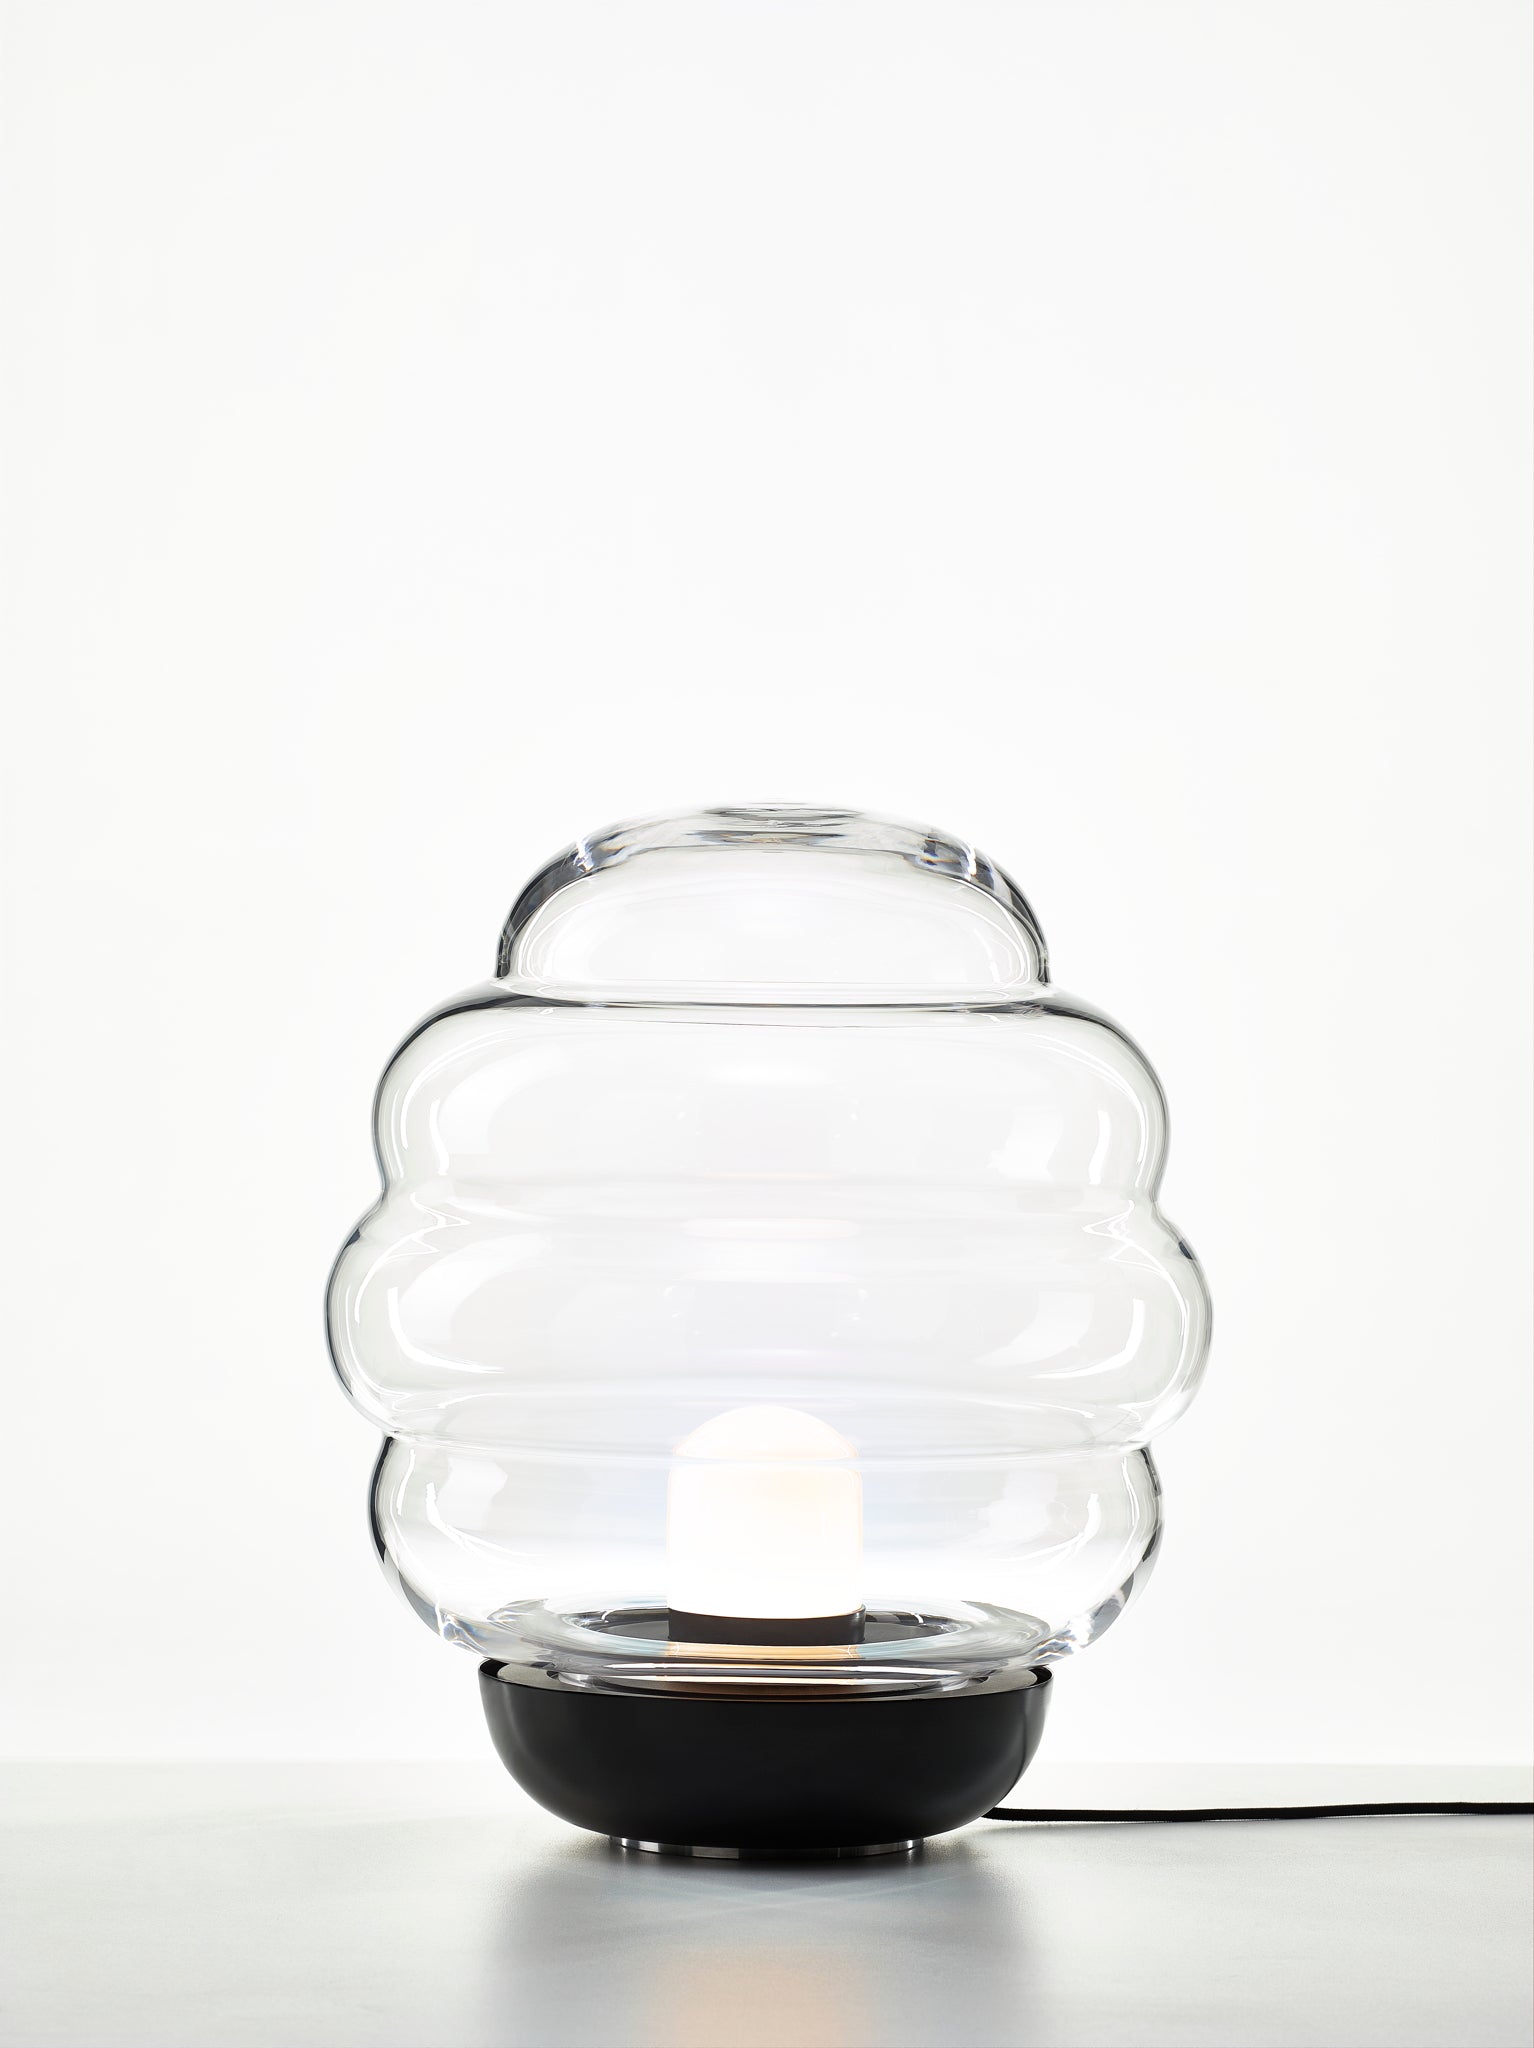 BLIMP MEDIUM - Table Lamp